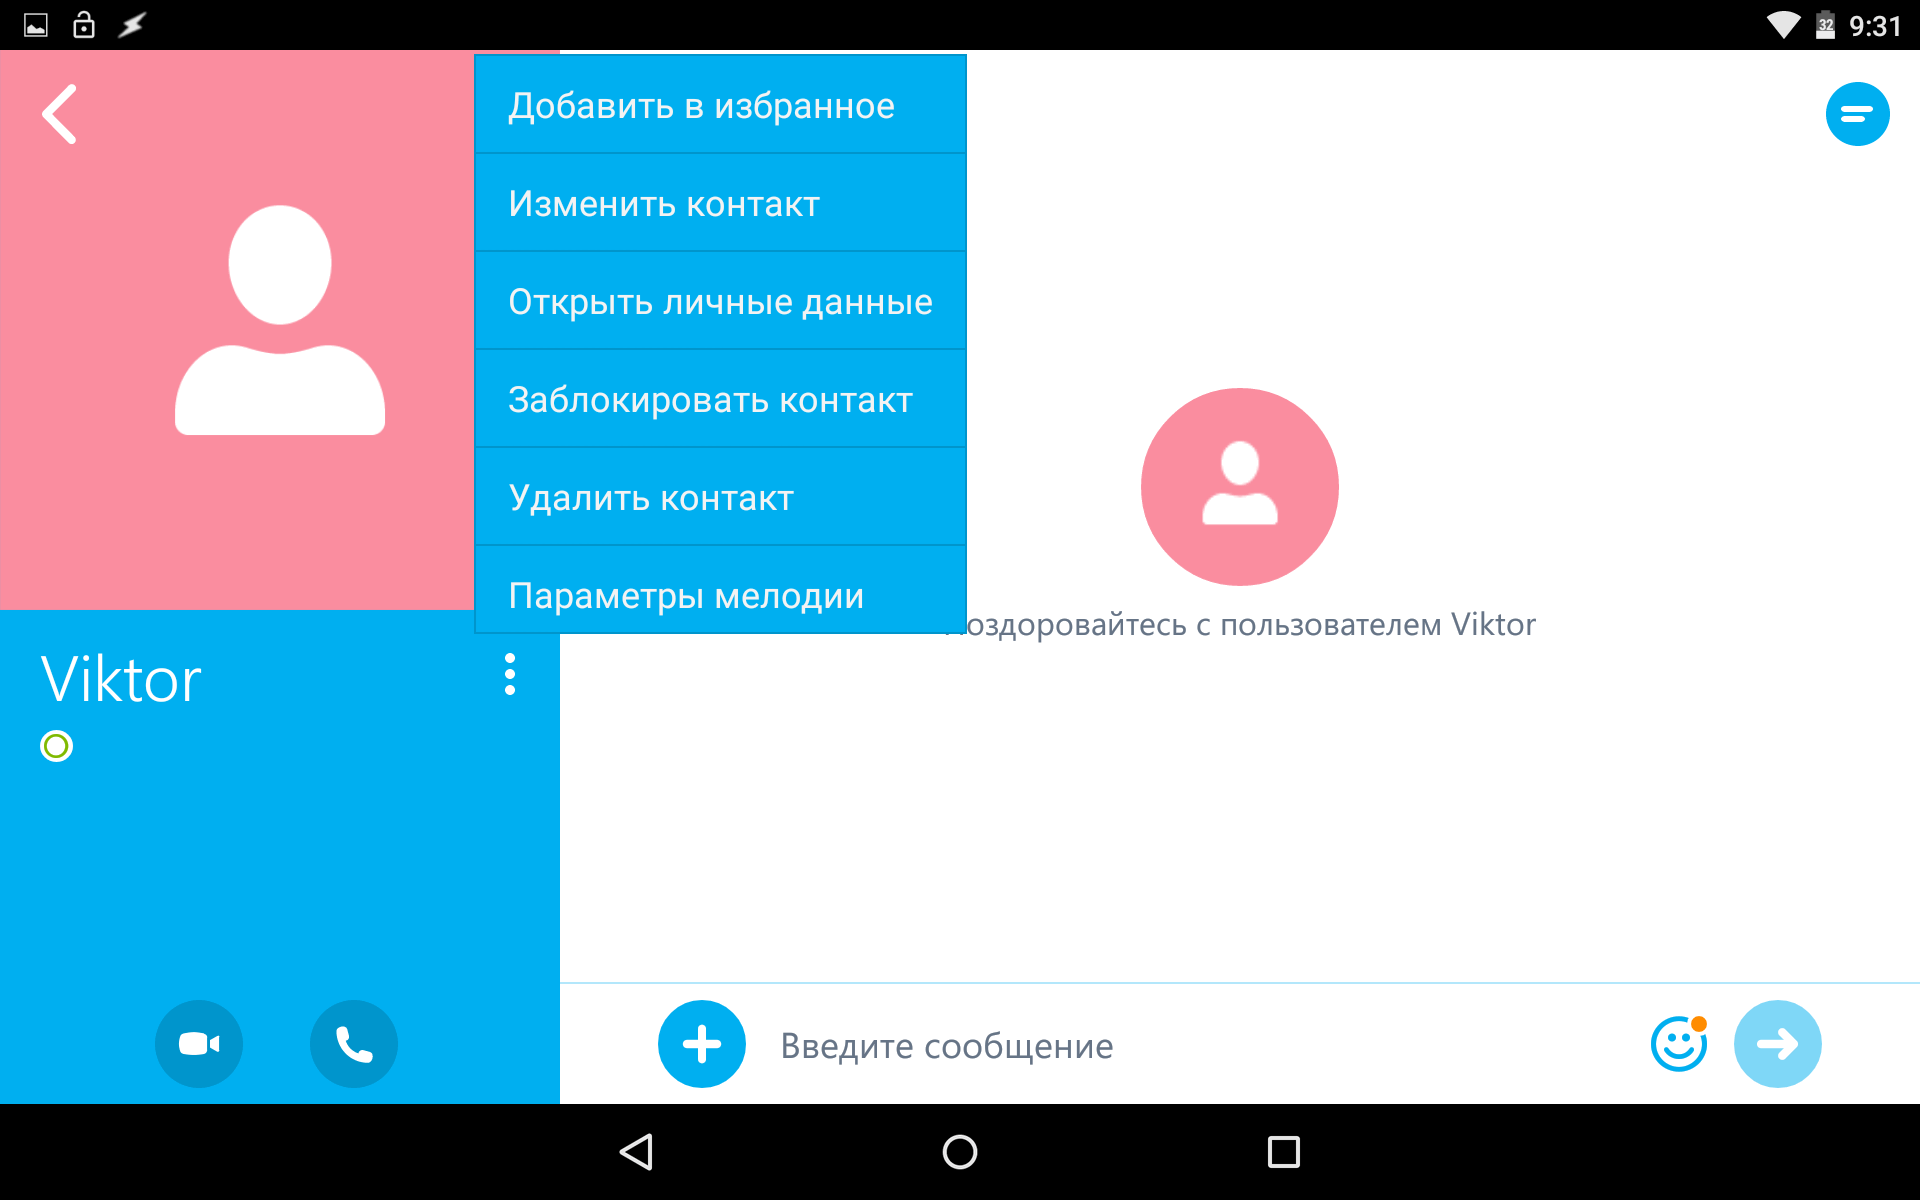 Программы для Android. Skype для Android обновился до версии 5.10 получив возможность присвоения собственных рингтонов разным контактам, а аткже - функцию переадресации фото